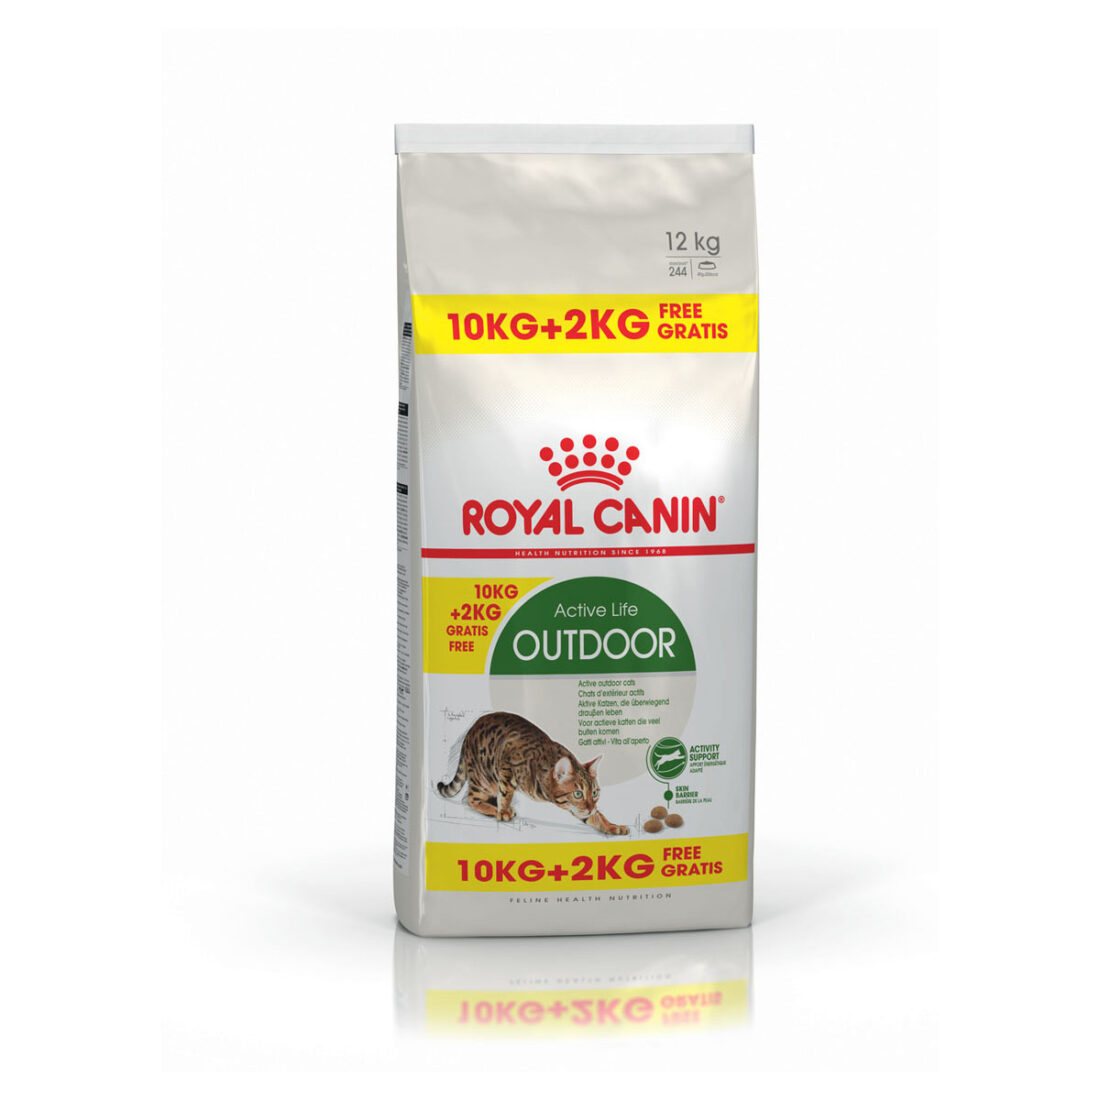 ROYAL CANIN OUTDOOR granule pro venkovní kočky 10